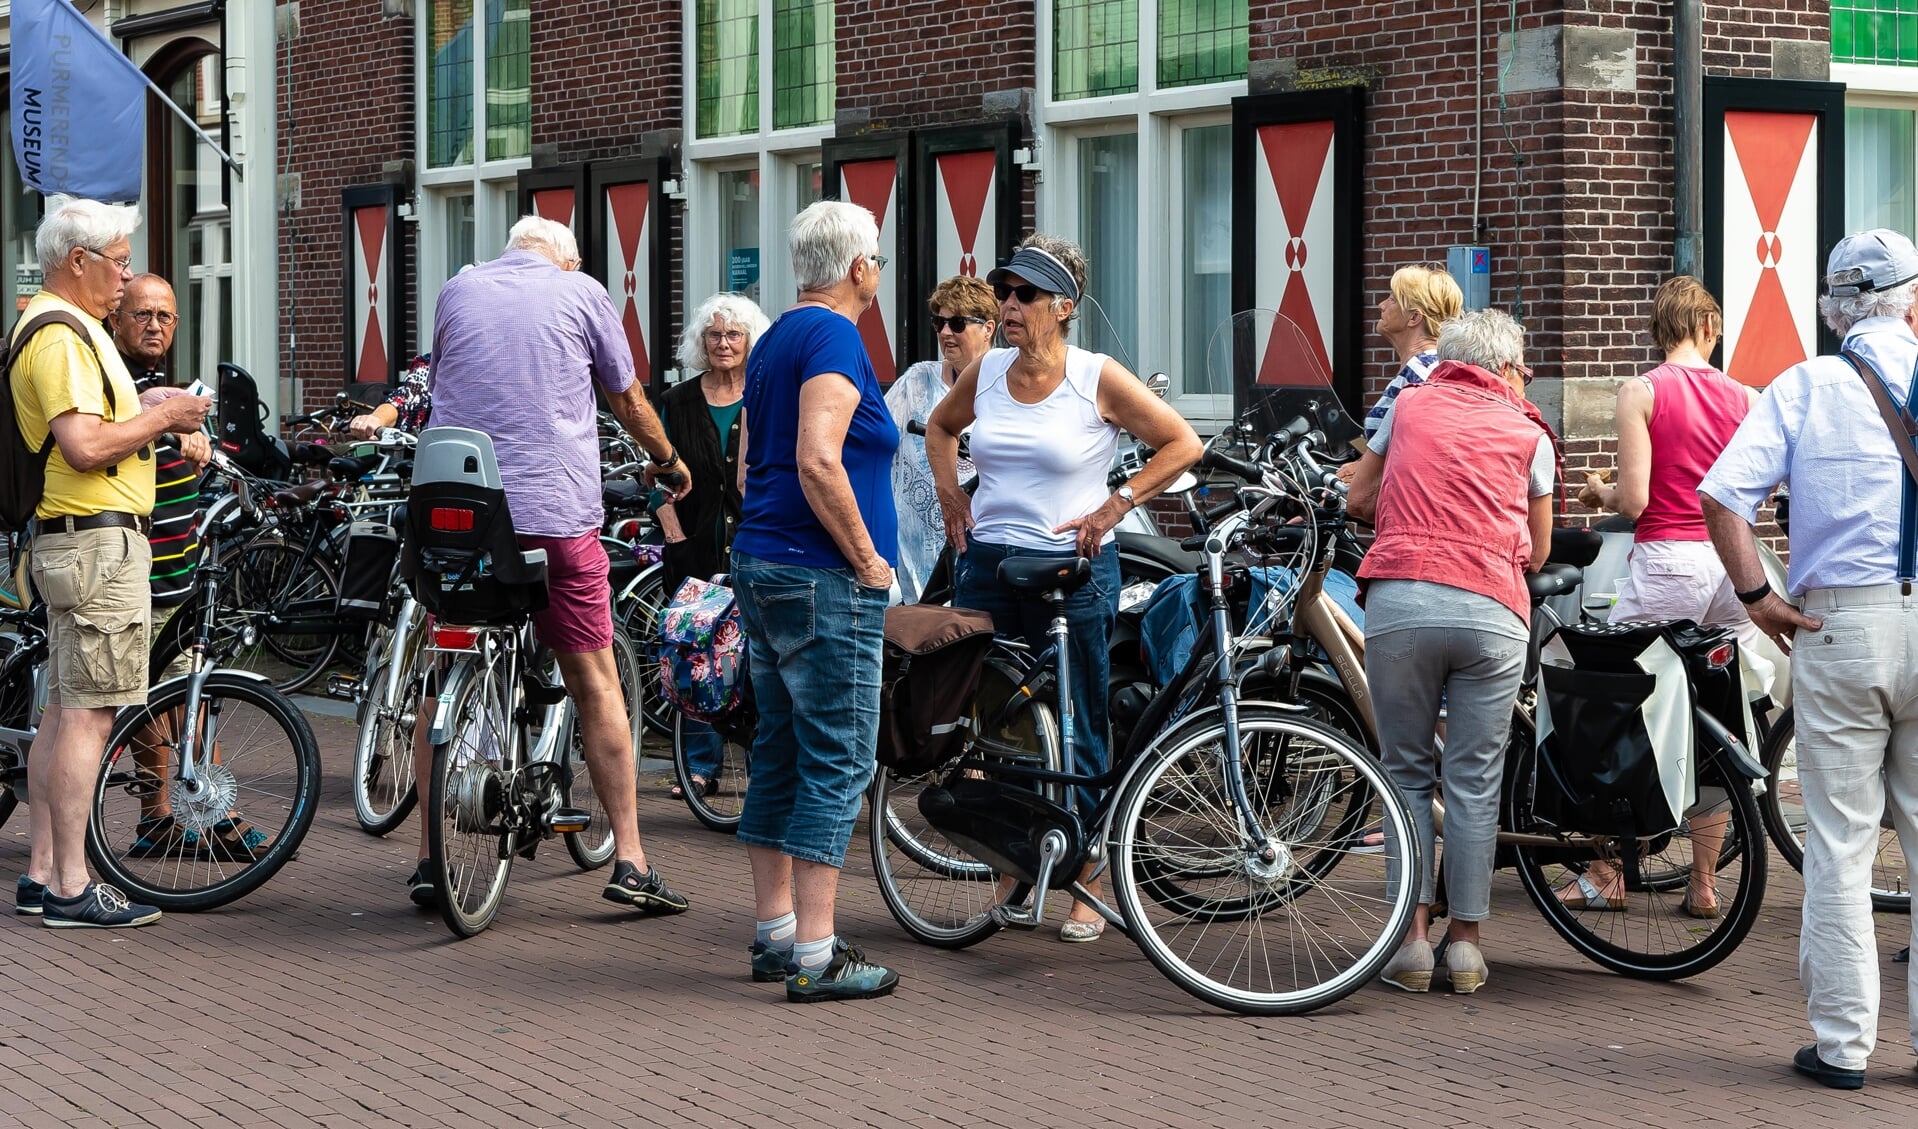 De VVV museumwinkel aan de Peperstraat is het verzamelpunt van de fietstocht. 